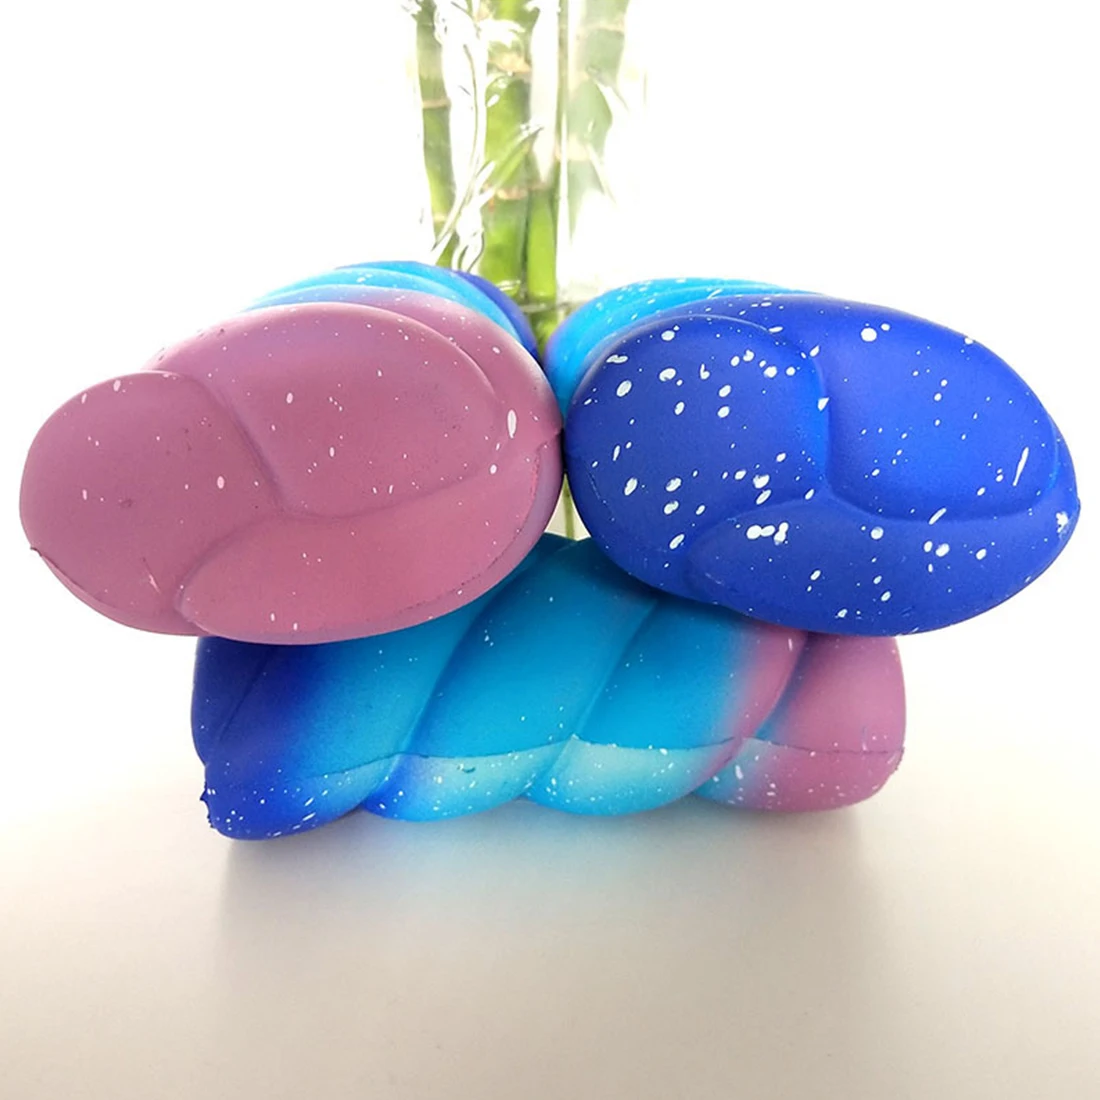 Новая мода милый Jumbo Kawaii мягкий хлопок конфеты декомпрессия игрушка медленно поднимающиеся игрушки для детей взрослых снимает стресс тревога